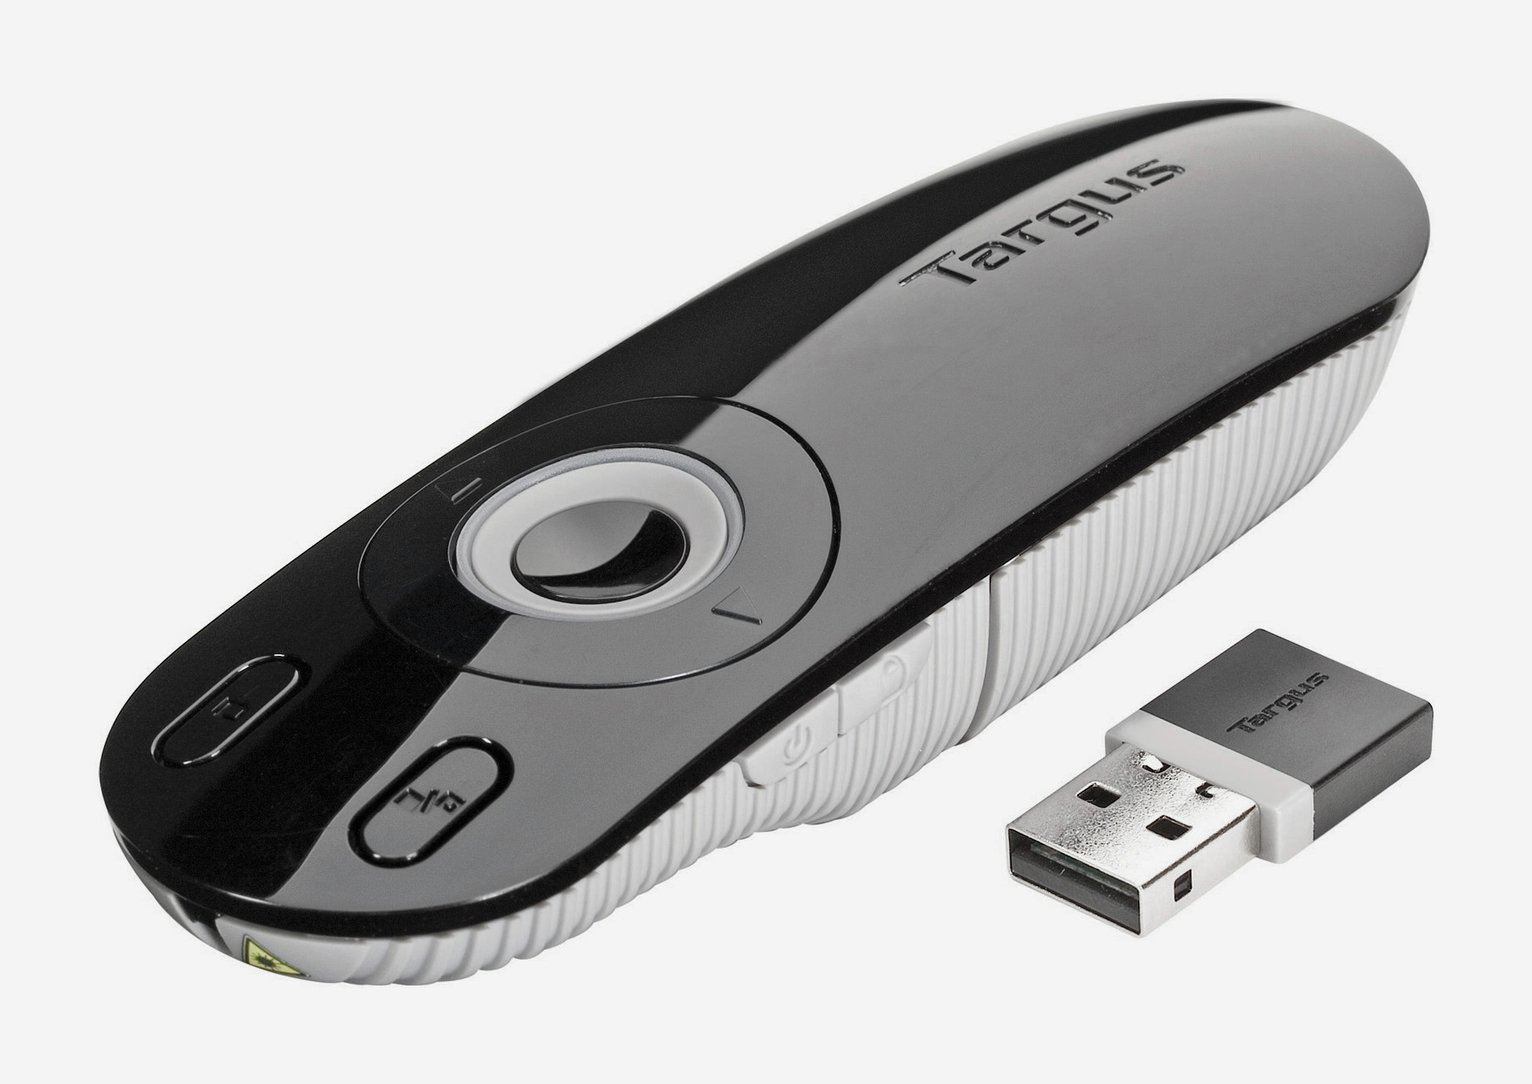 Targus USB Laser Presenter Review